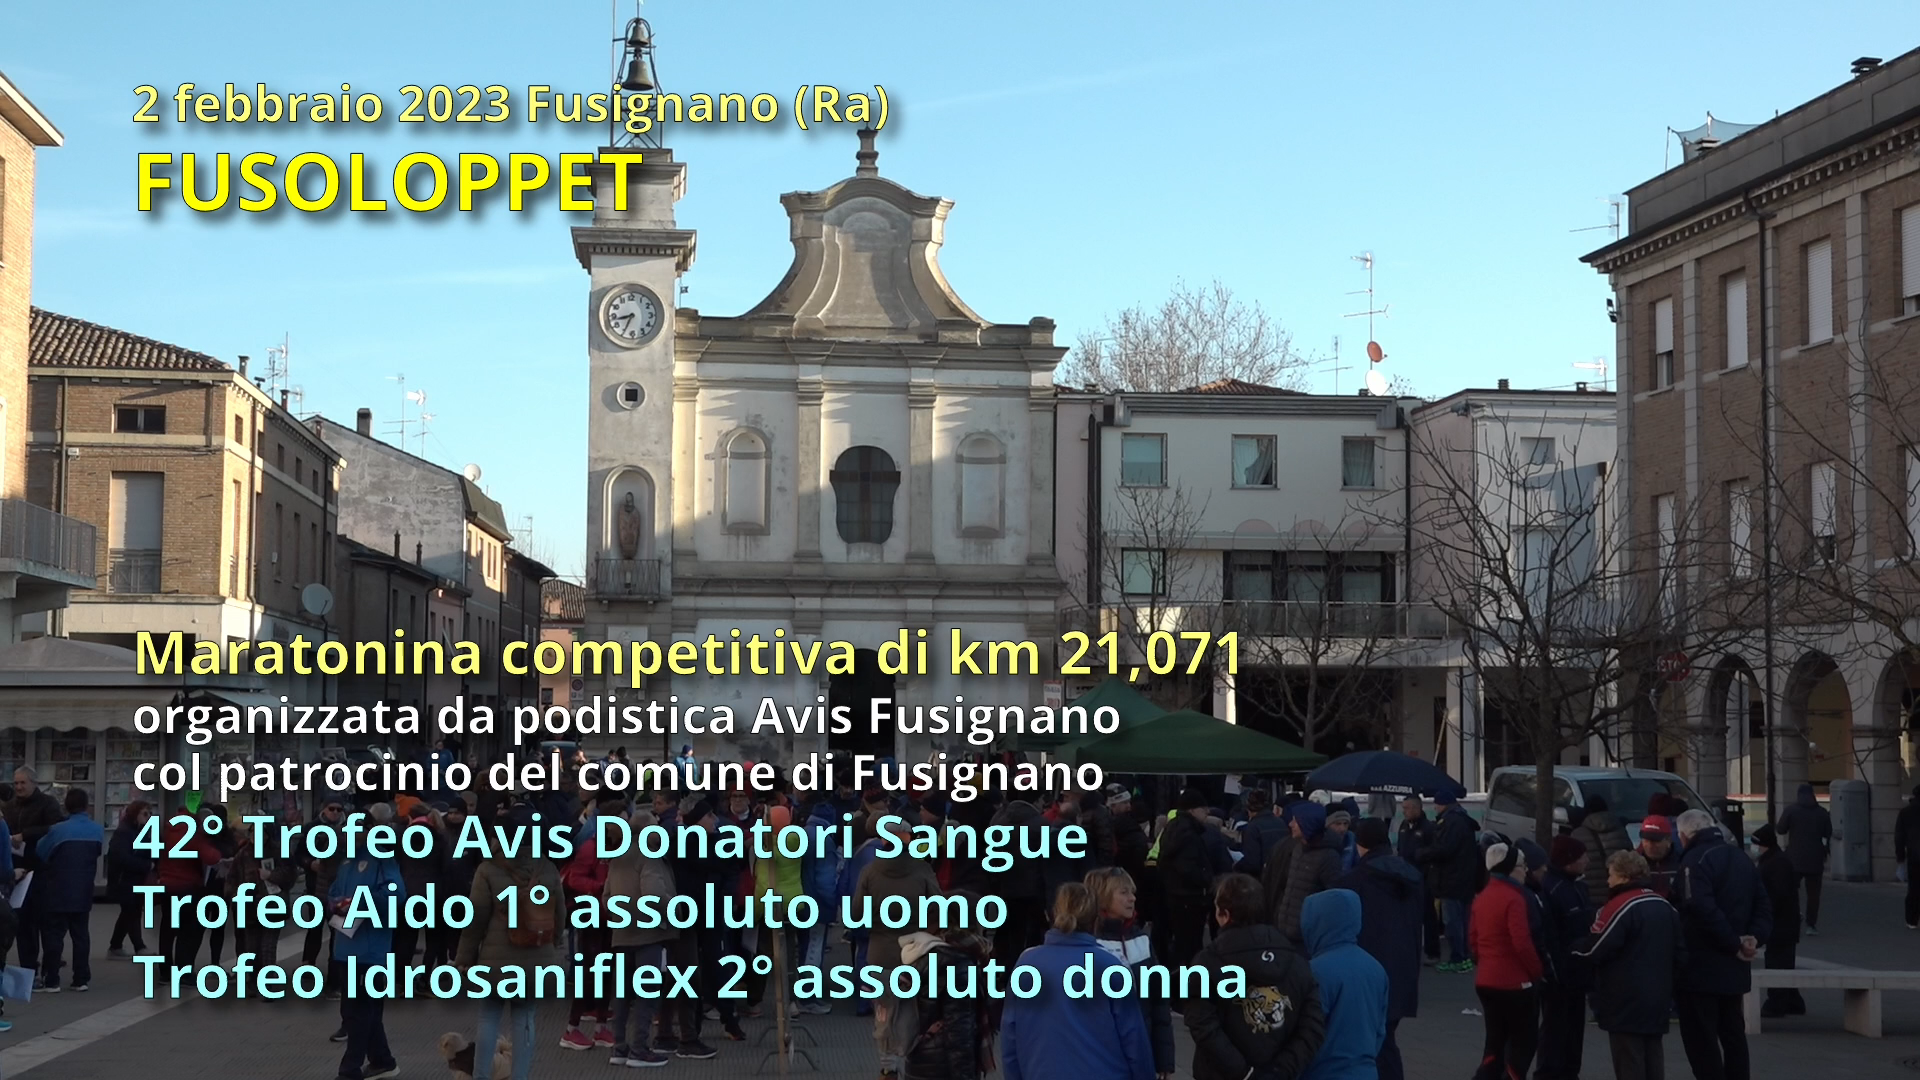 FUSOLOPPET: Maratonina competitiva di km 21,071 organizzata da Podistica Avis di Fusignano